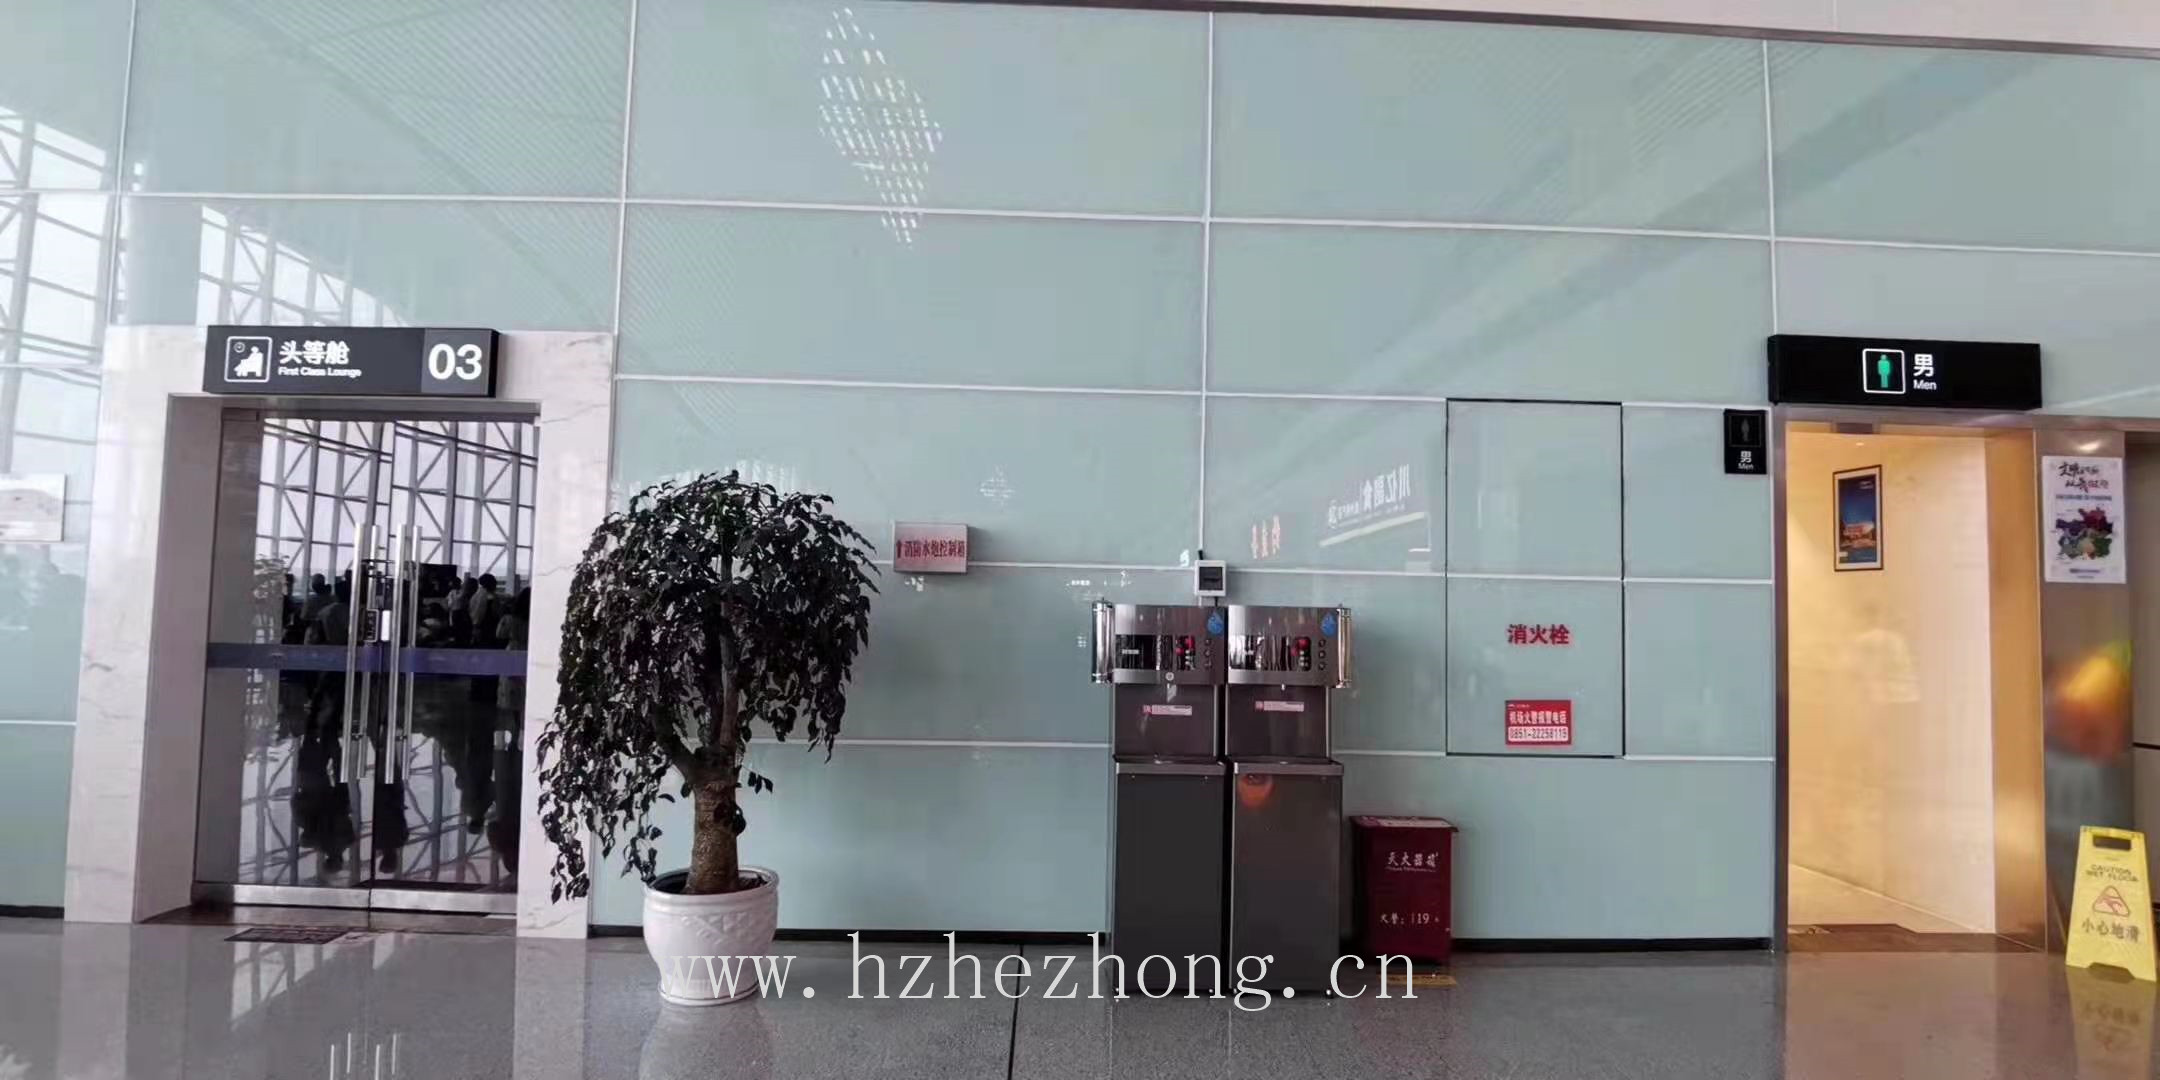  贵州茅台机场使用贺众牌饮水机